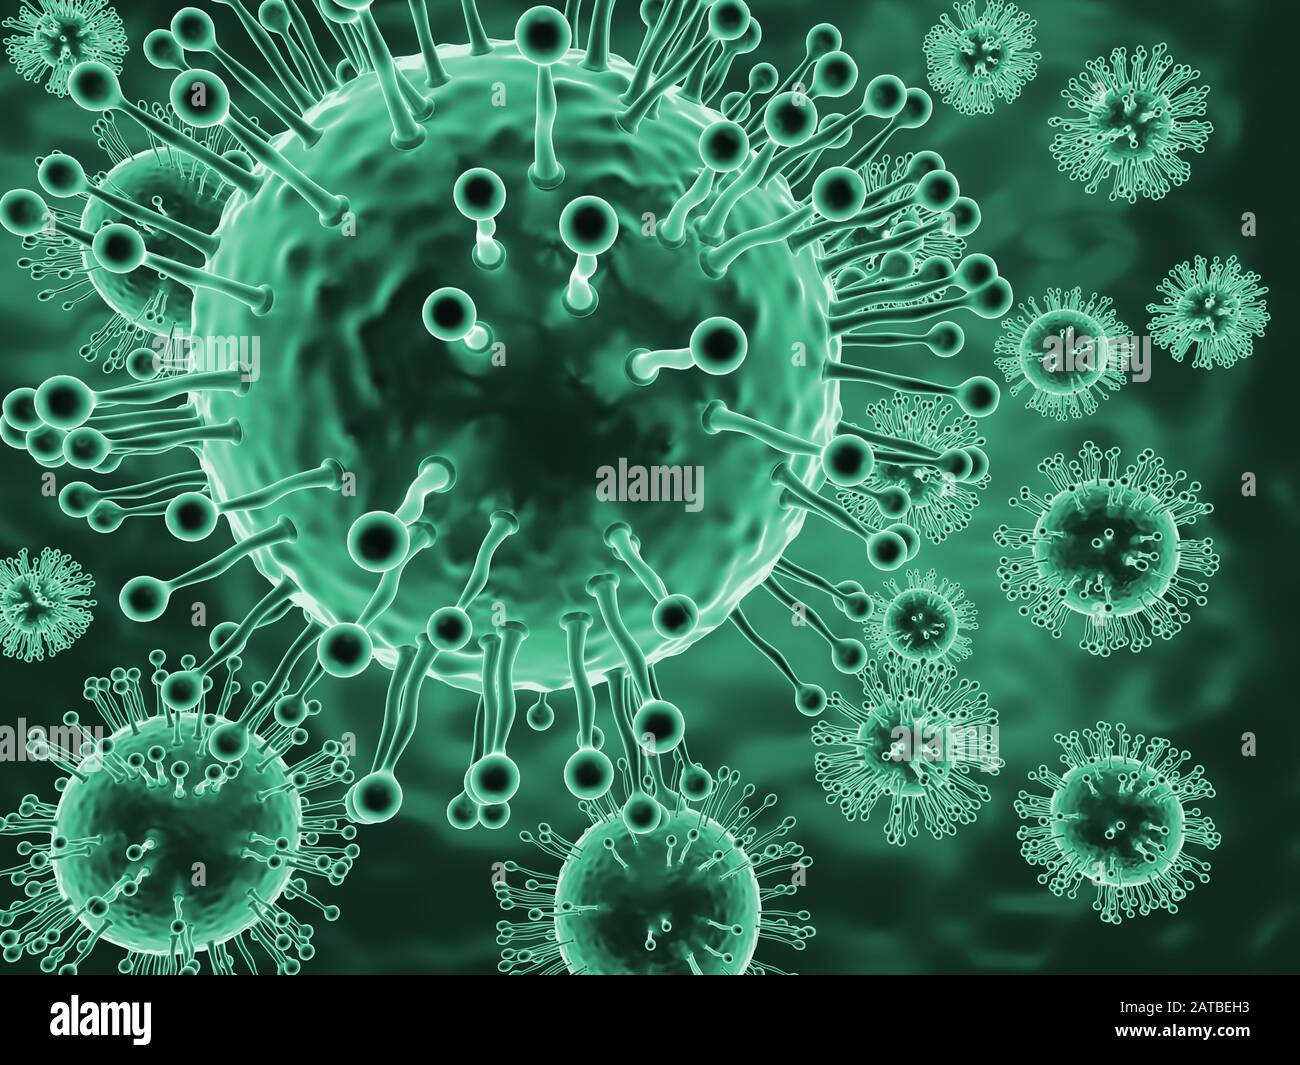 Imagen microscópica de partículas mortales de coronavirus Foto de stock